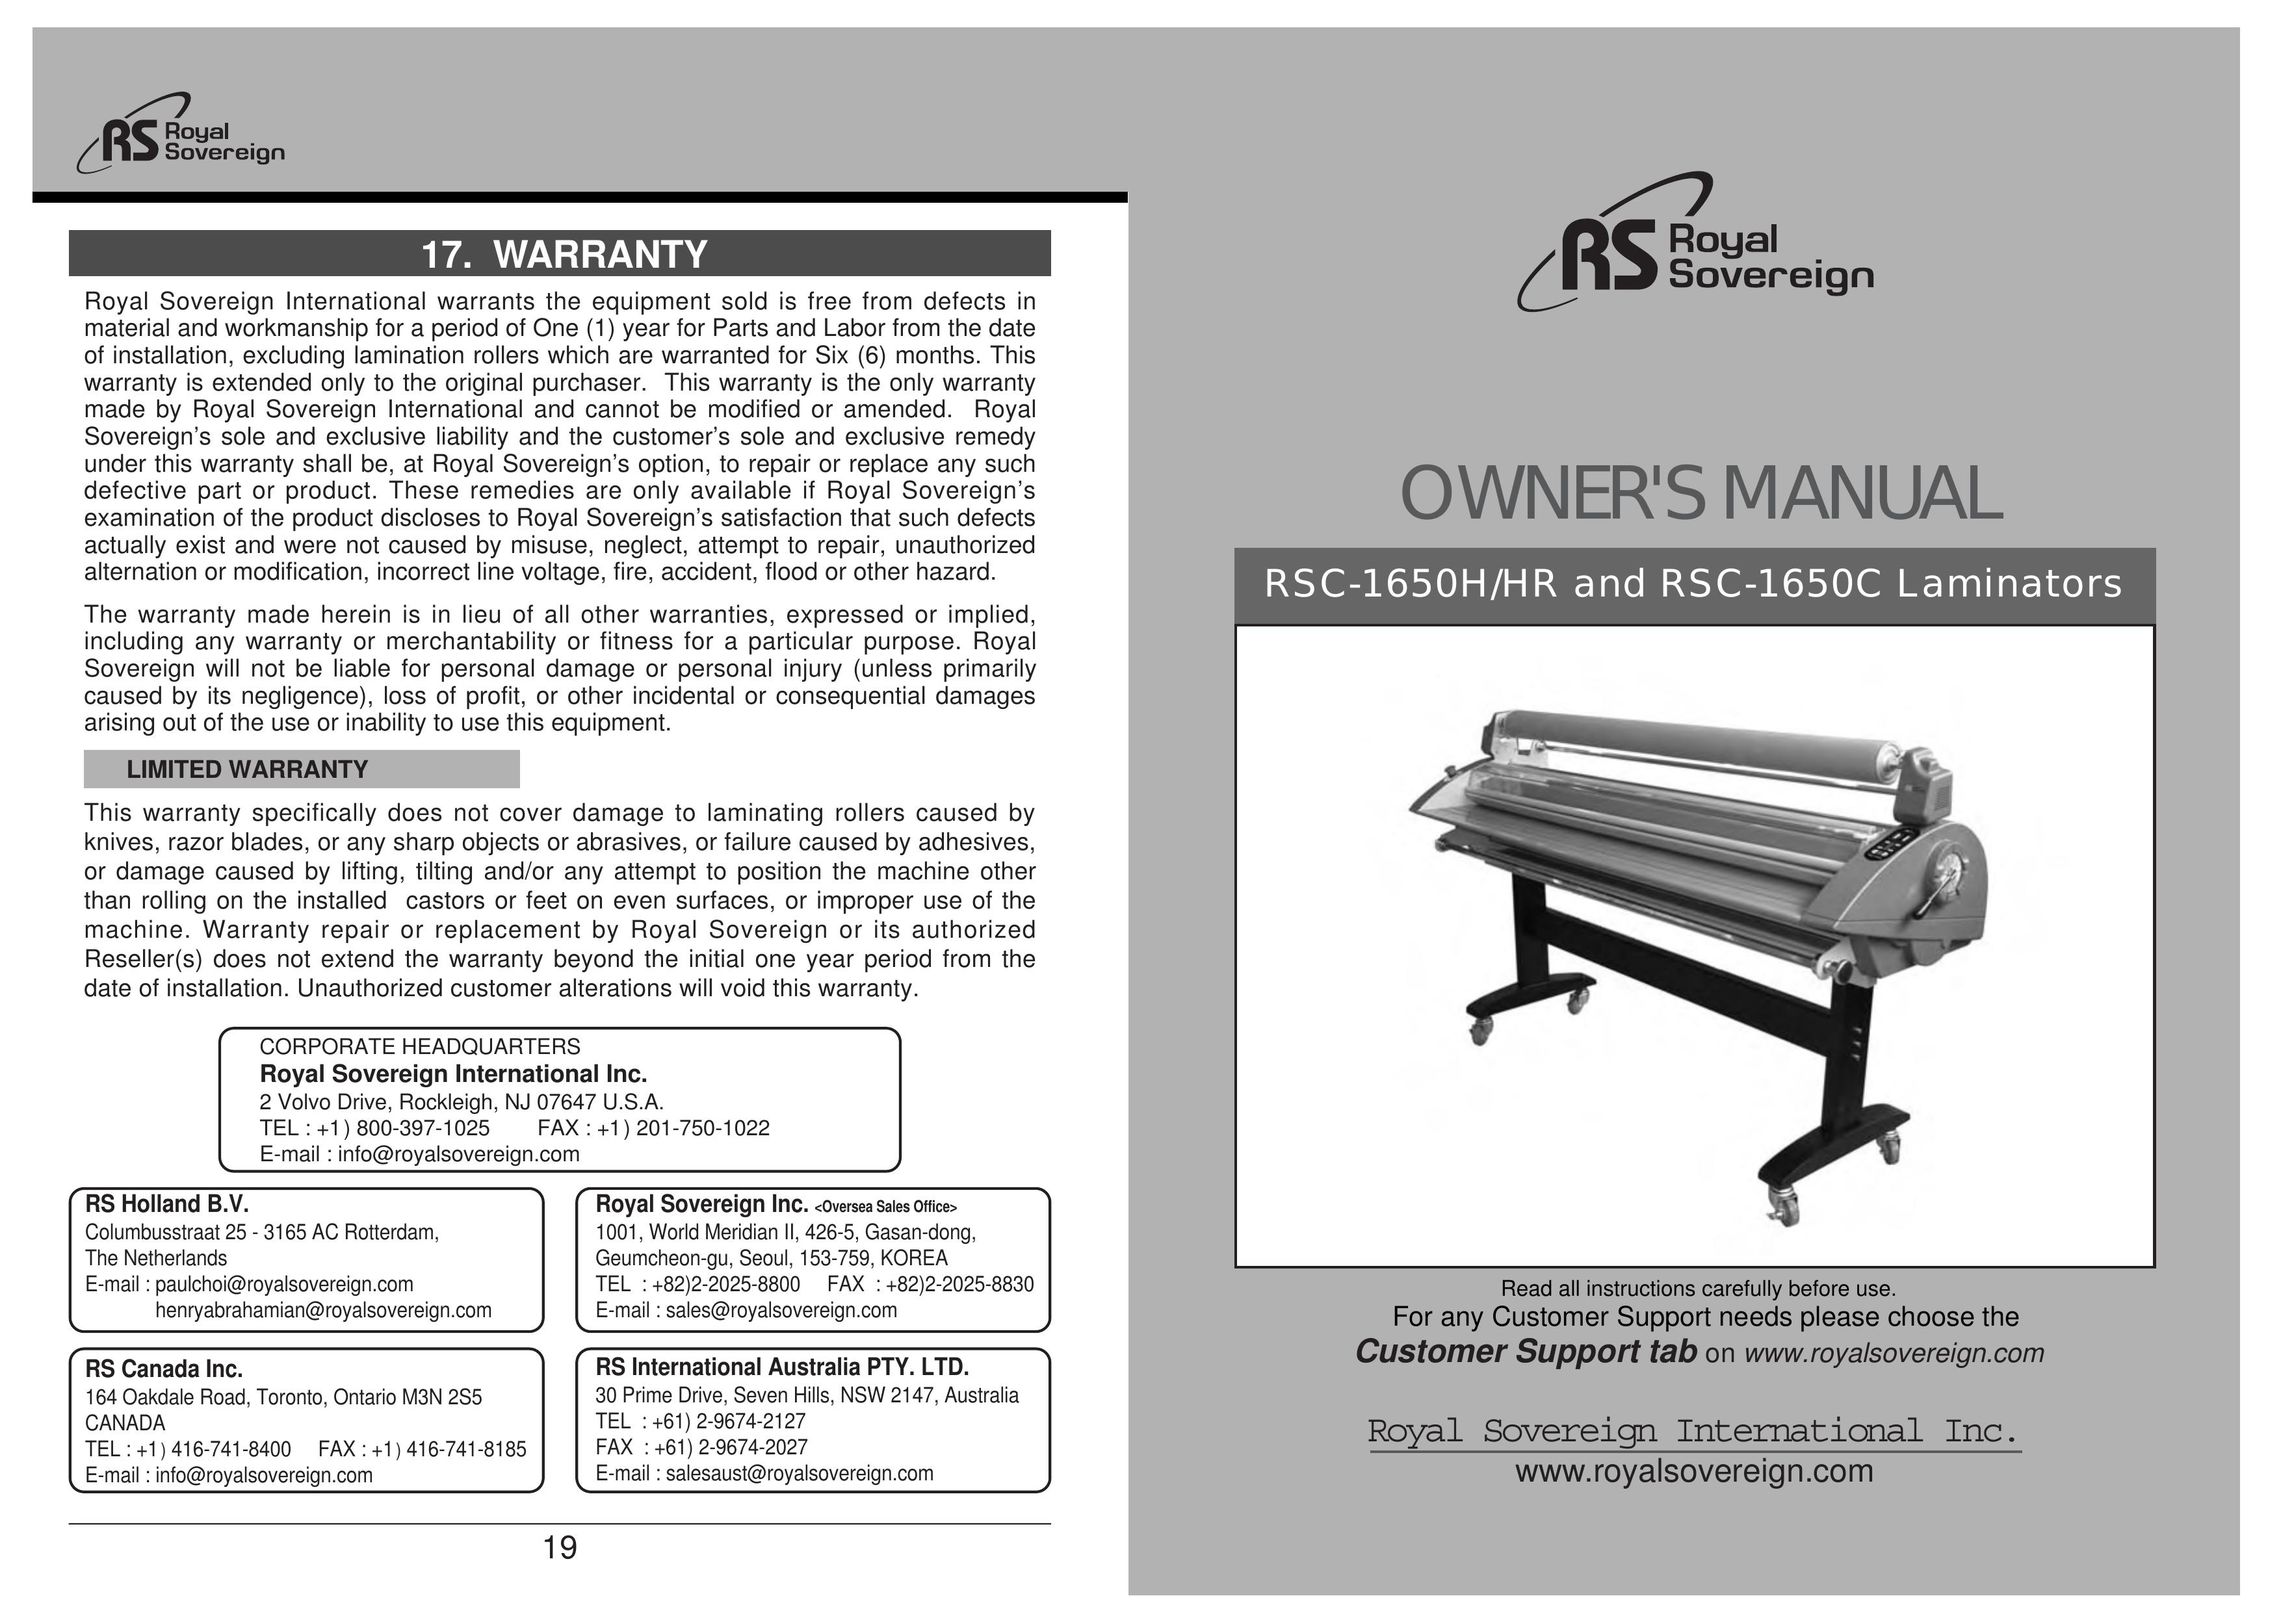 Royal Sovereign RSC Series Laminator User Manual